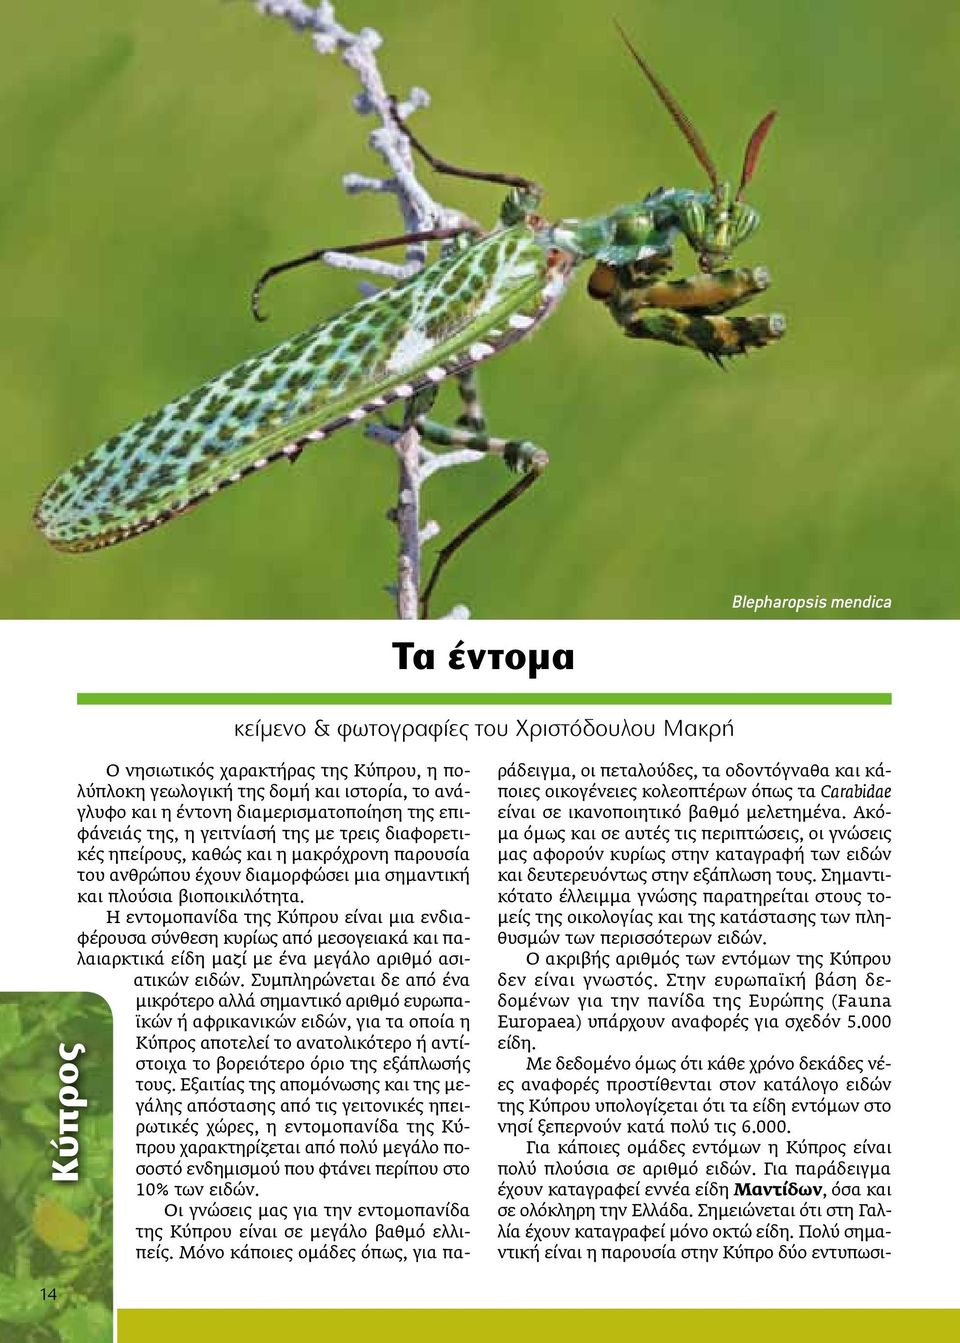 Η εντομοπανίδα της Κύπρου είναι μια ενδιαφέρουσα σύνθεση κυρίως από μεσογειακά και παλαιαρκτικά είδη μαζί με ένα μεγάλο αριθμό ασιατικών ειδών.